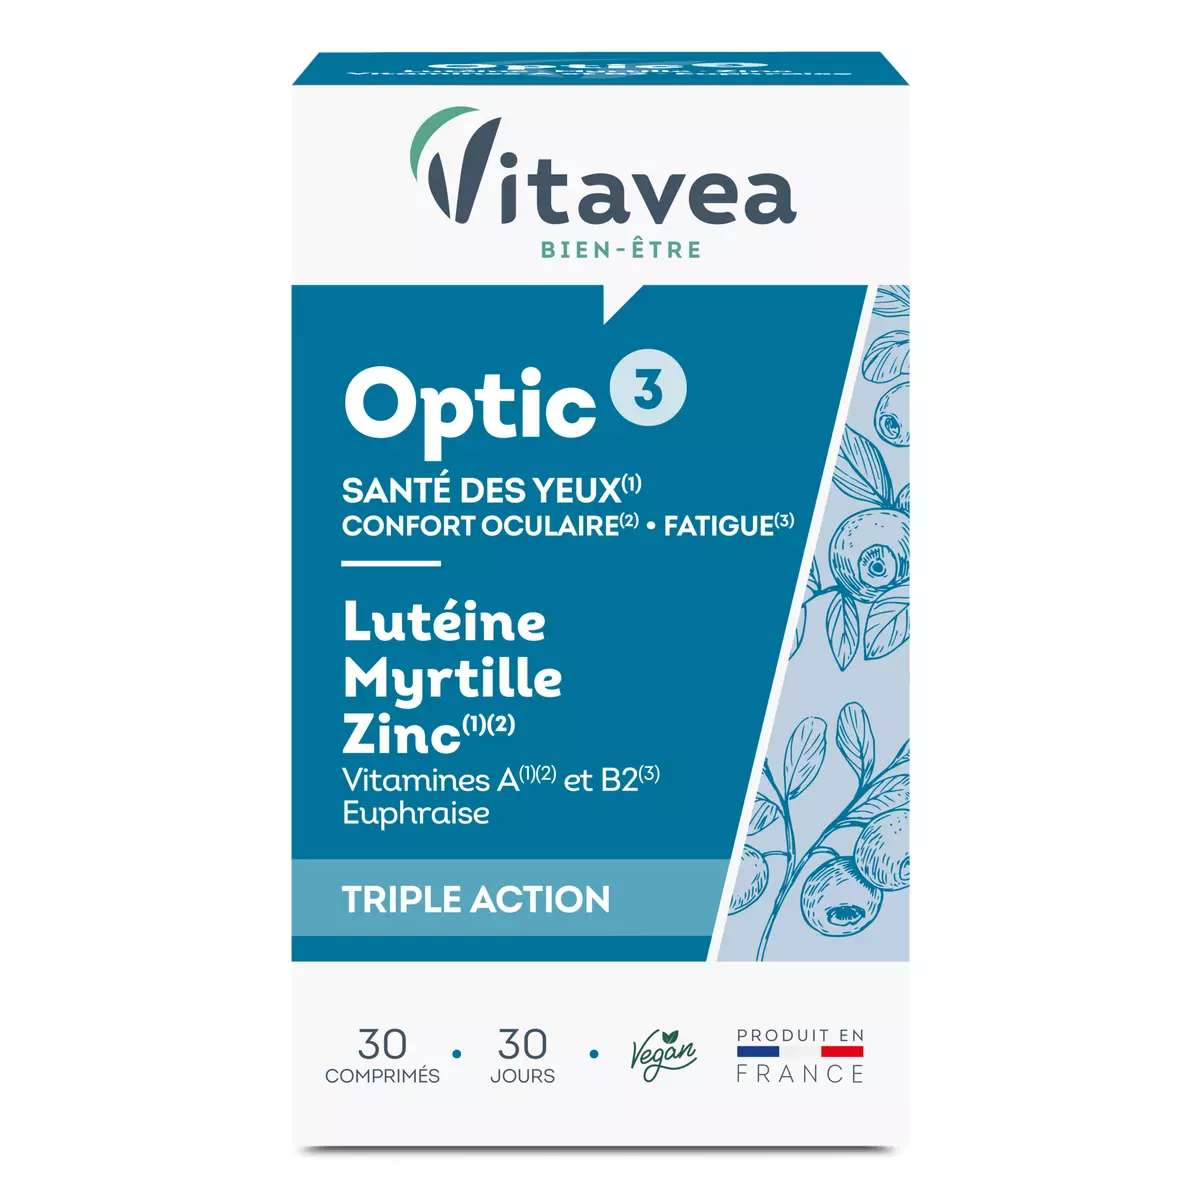 VITAVEA Optic 3 comprimé santé des yeux triple action 30 comprimés